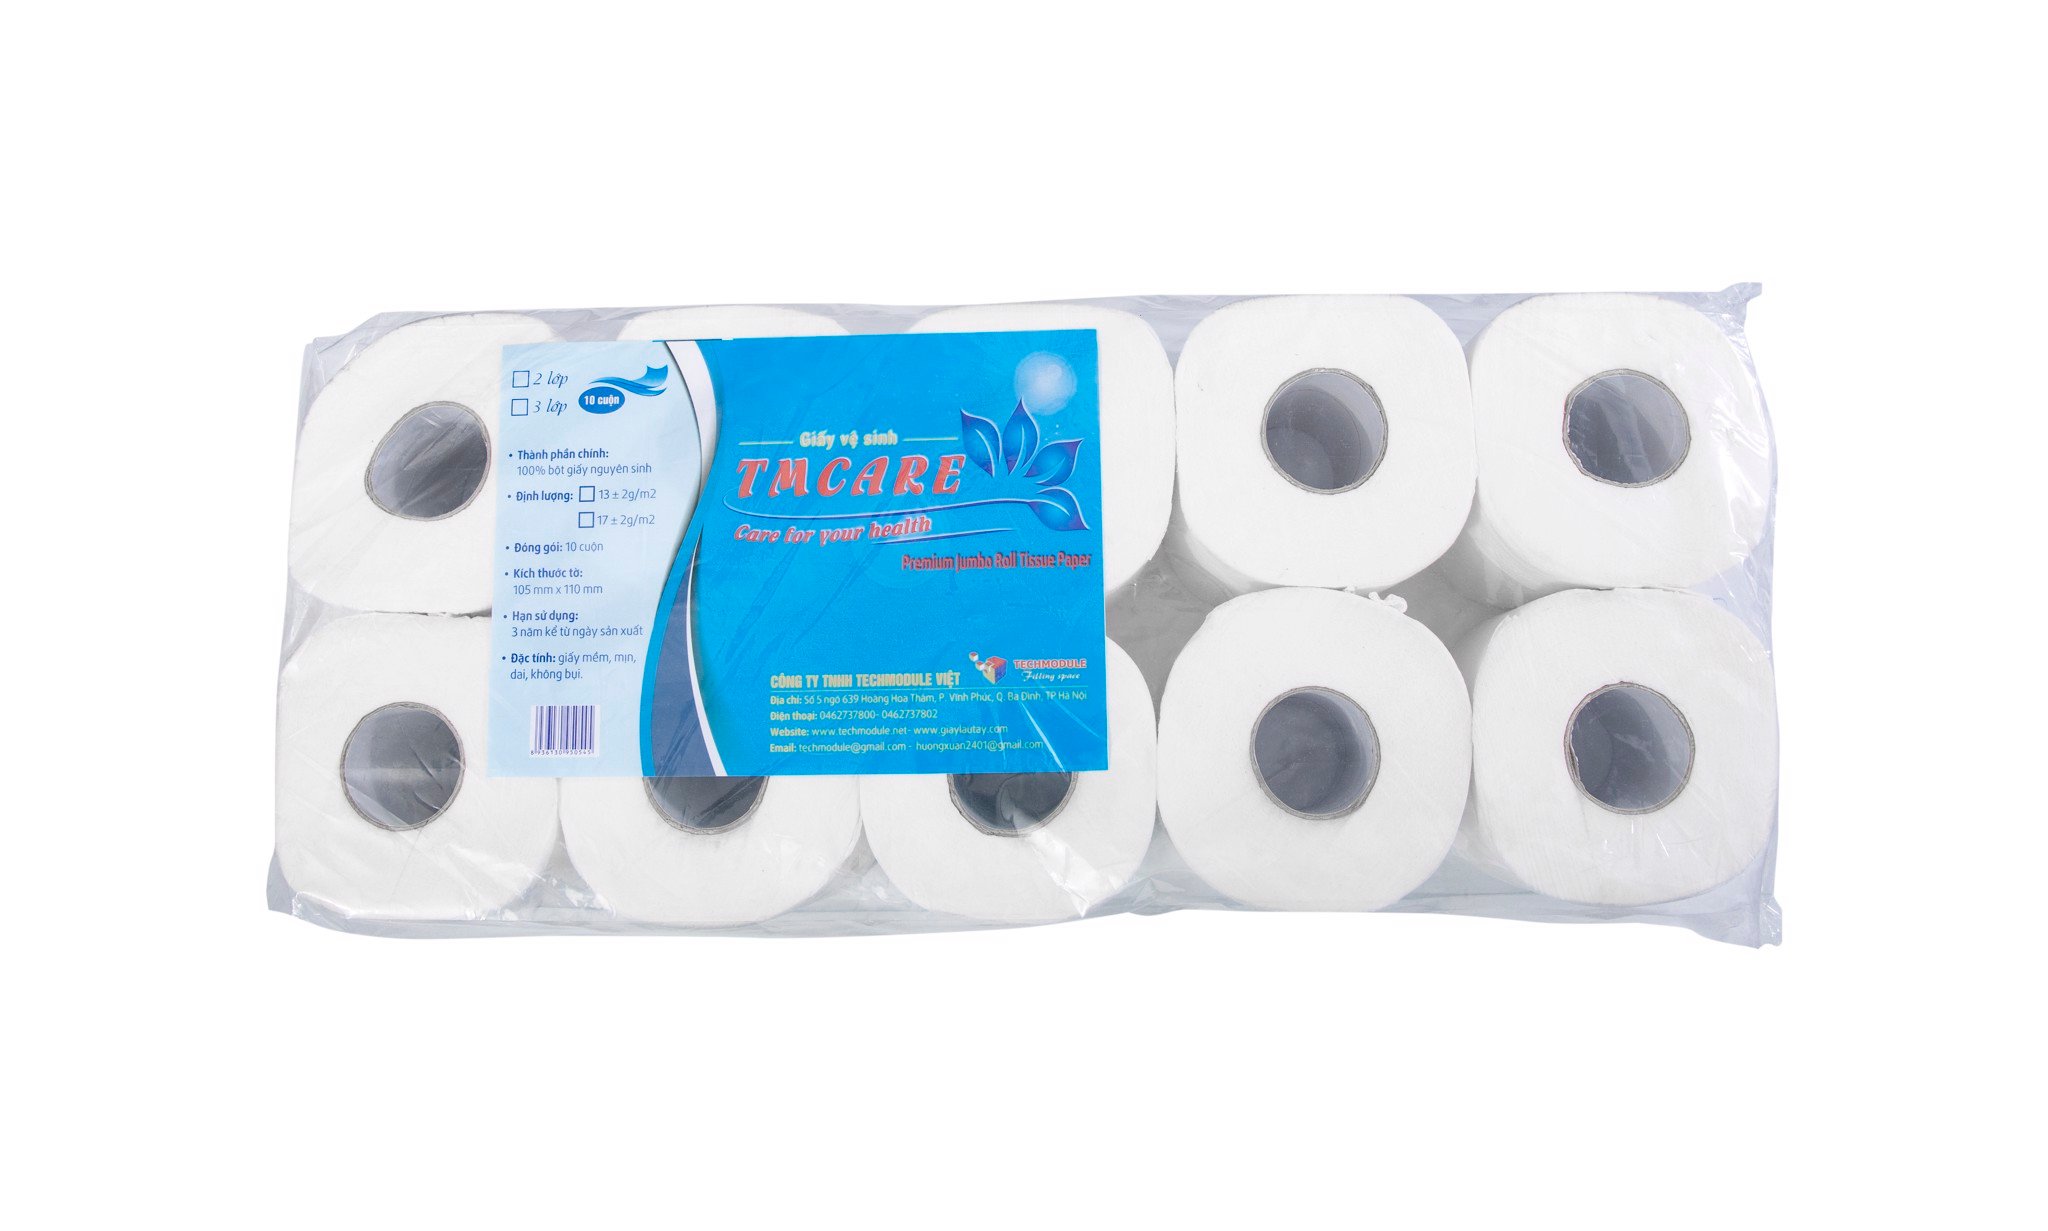 Tiêu đề: Cẩm nang sử dụng giấy vệ sinh TMCARE 3 lớp mịn - mã TMCR-3L hiệu quả